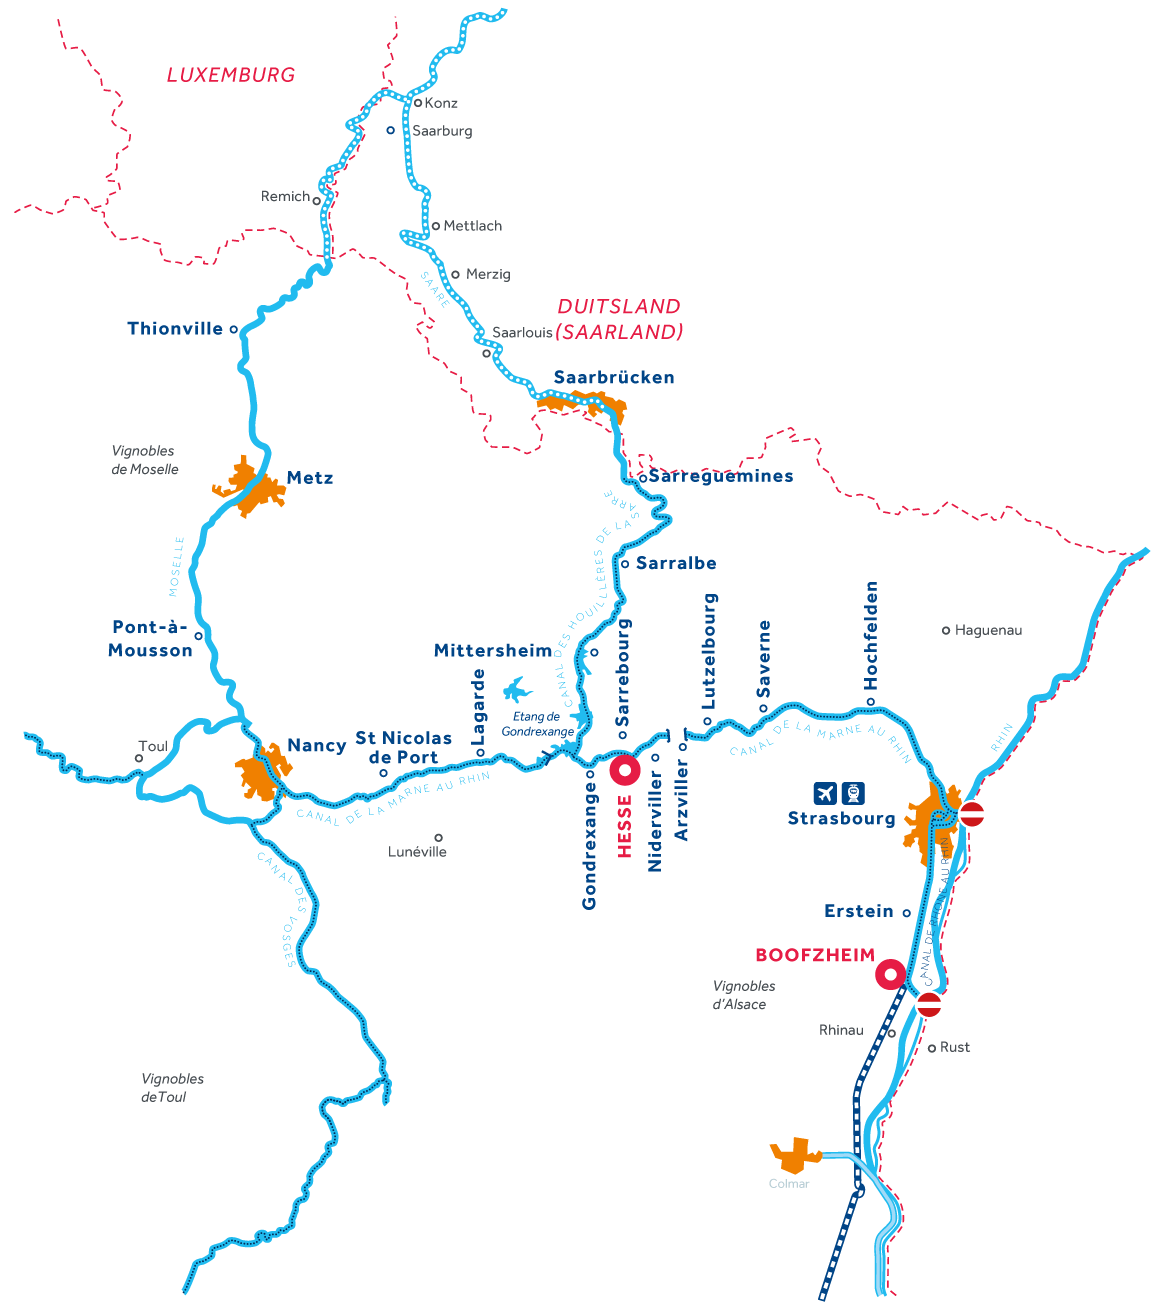 Kaart van de vaarregio: Elzas-Lotharingen